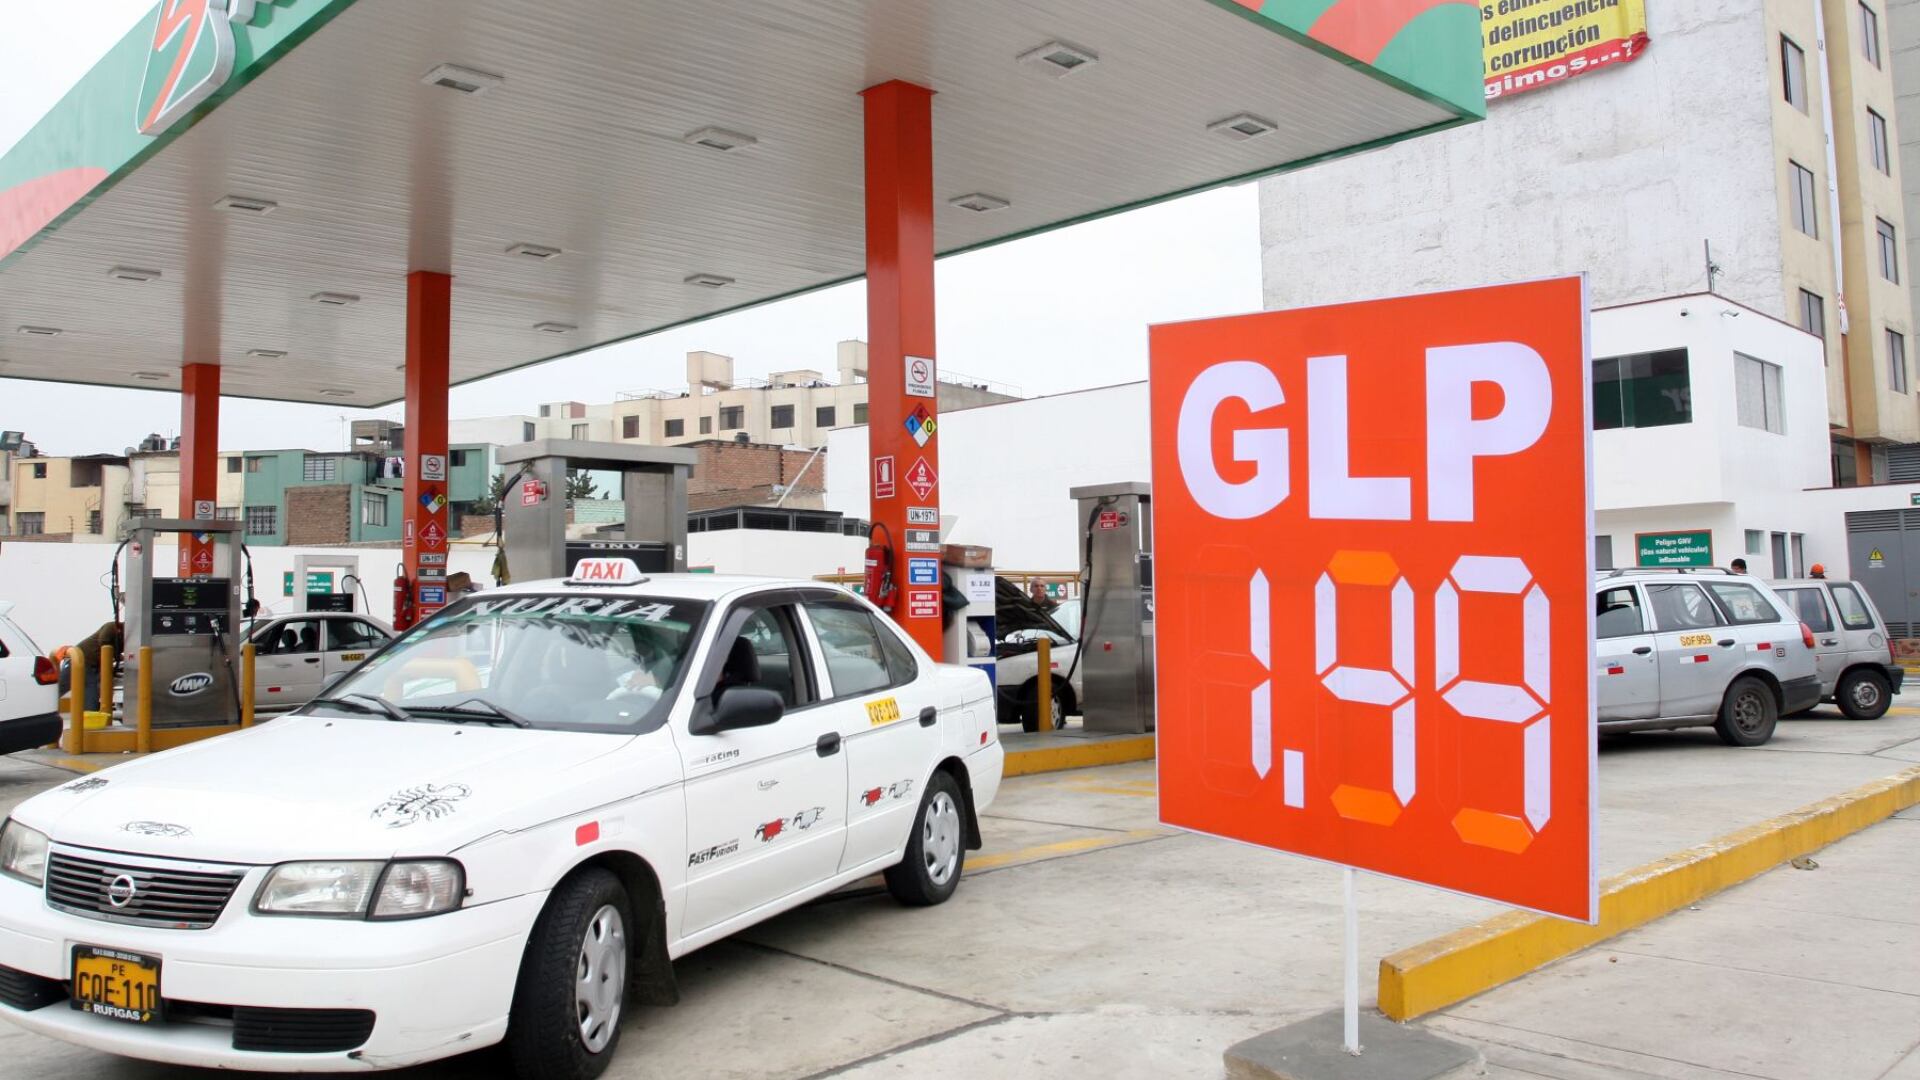 Conductores reportan escasez de GLP en grifos de Lima a causa de cierre de puertos por fuertes oleajes